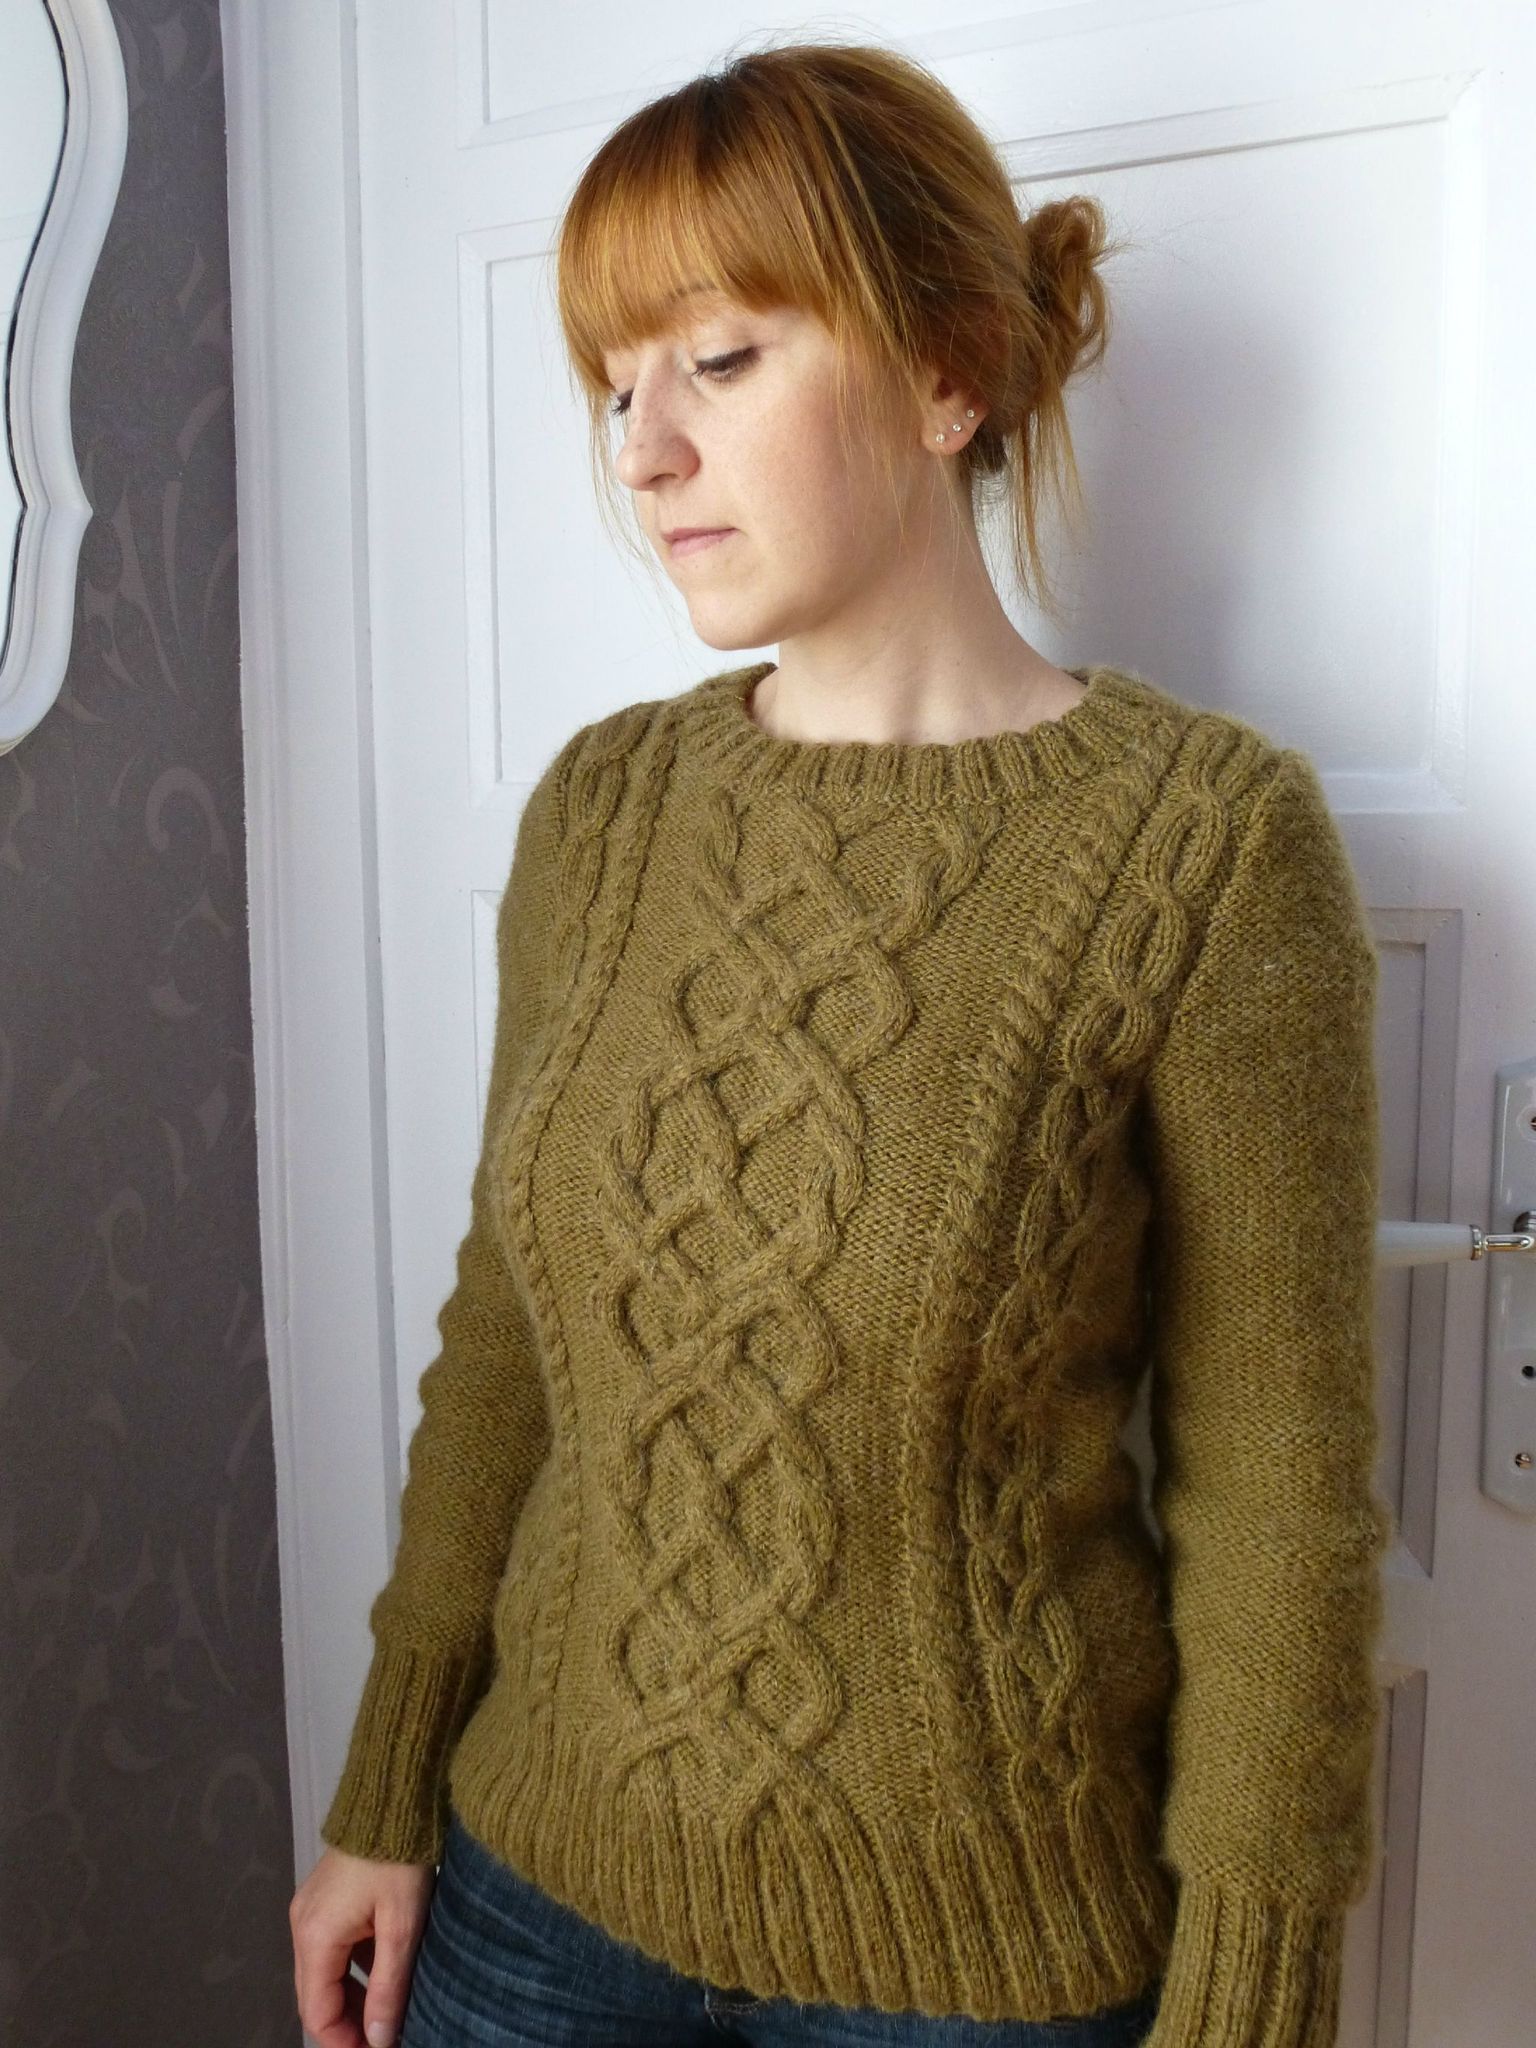 modele gilet irlandais femme a tricoter gratuit